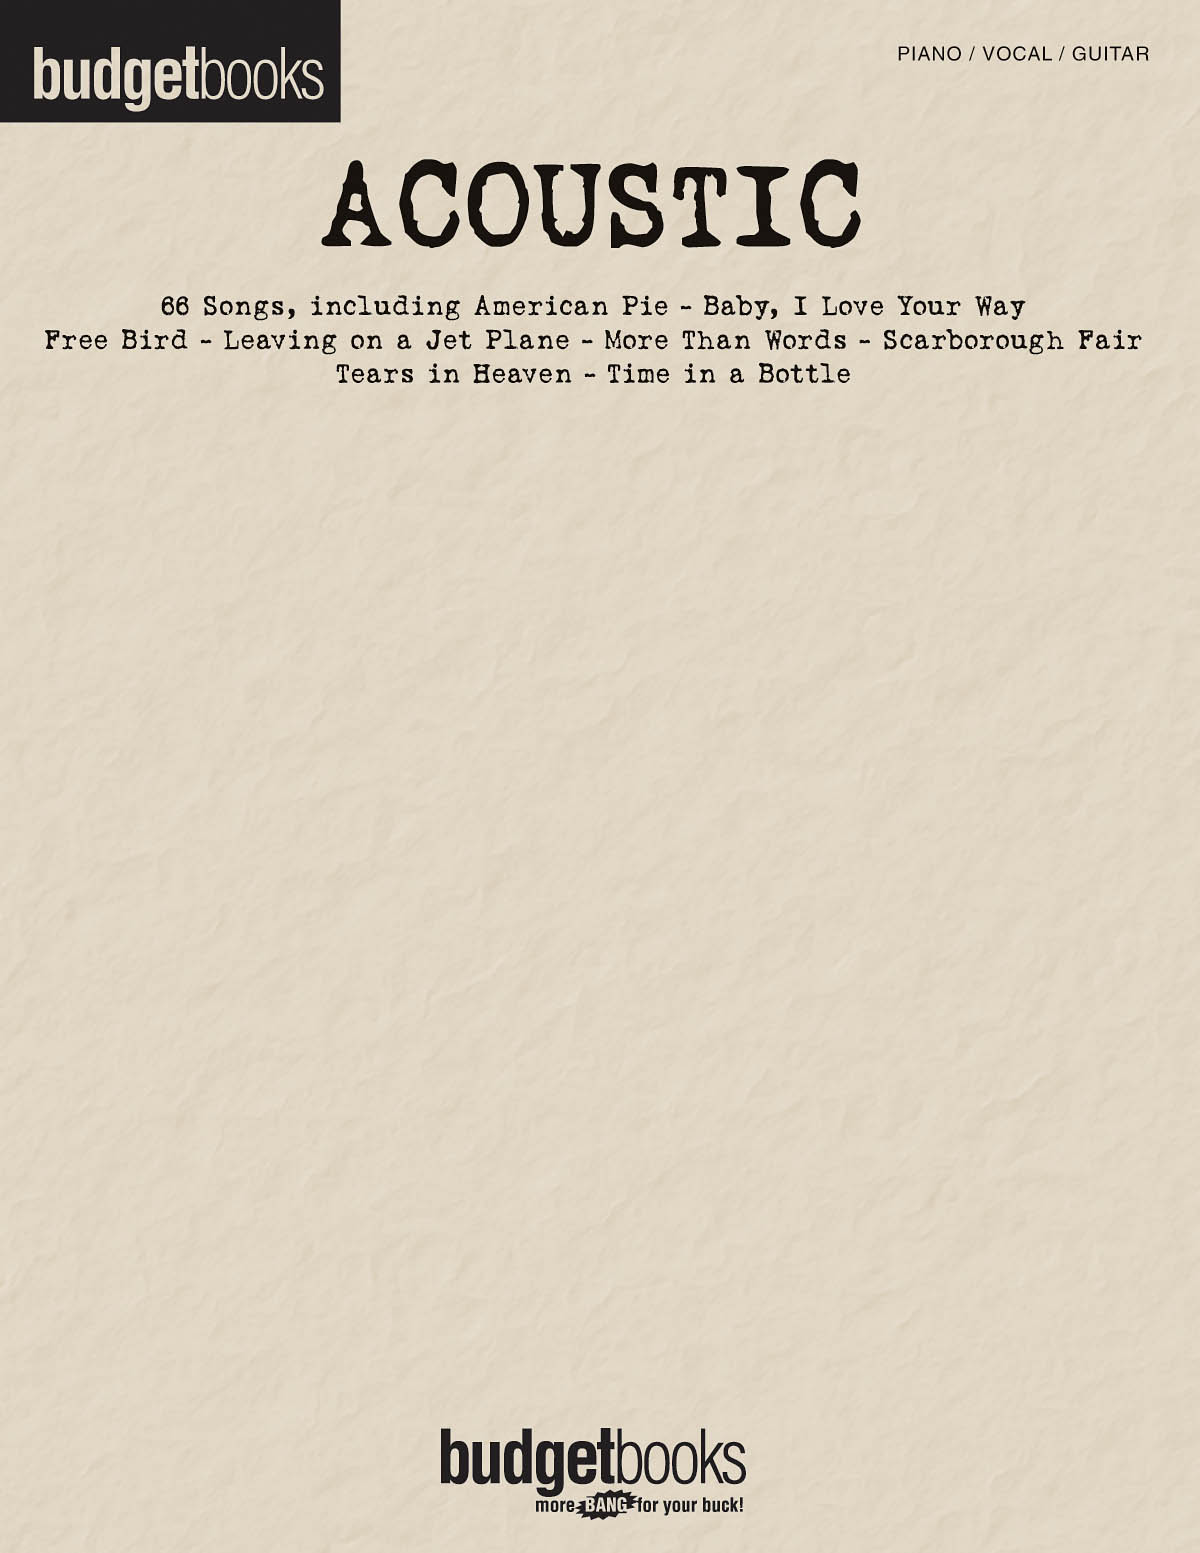 Acoustic - Budget Books - písně pro klavír, zpěv a kytaru